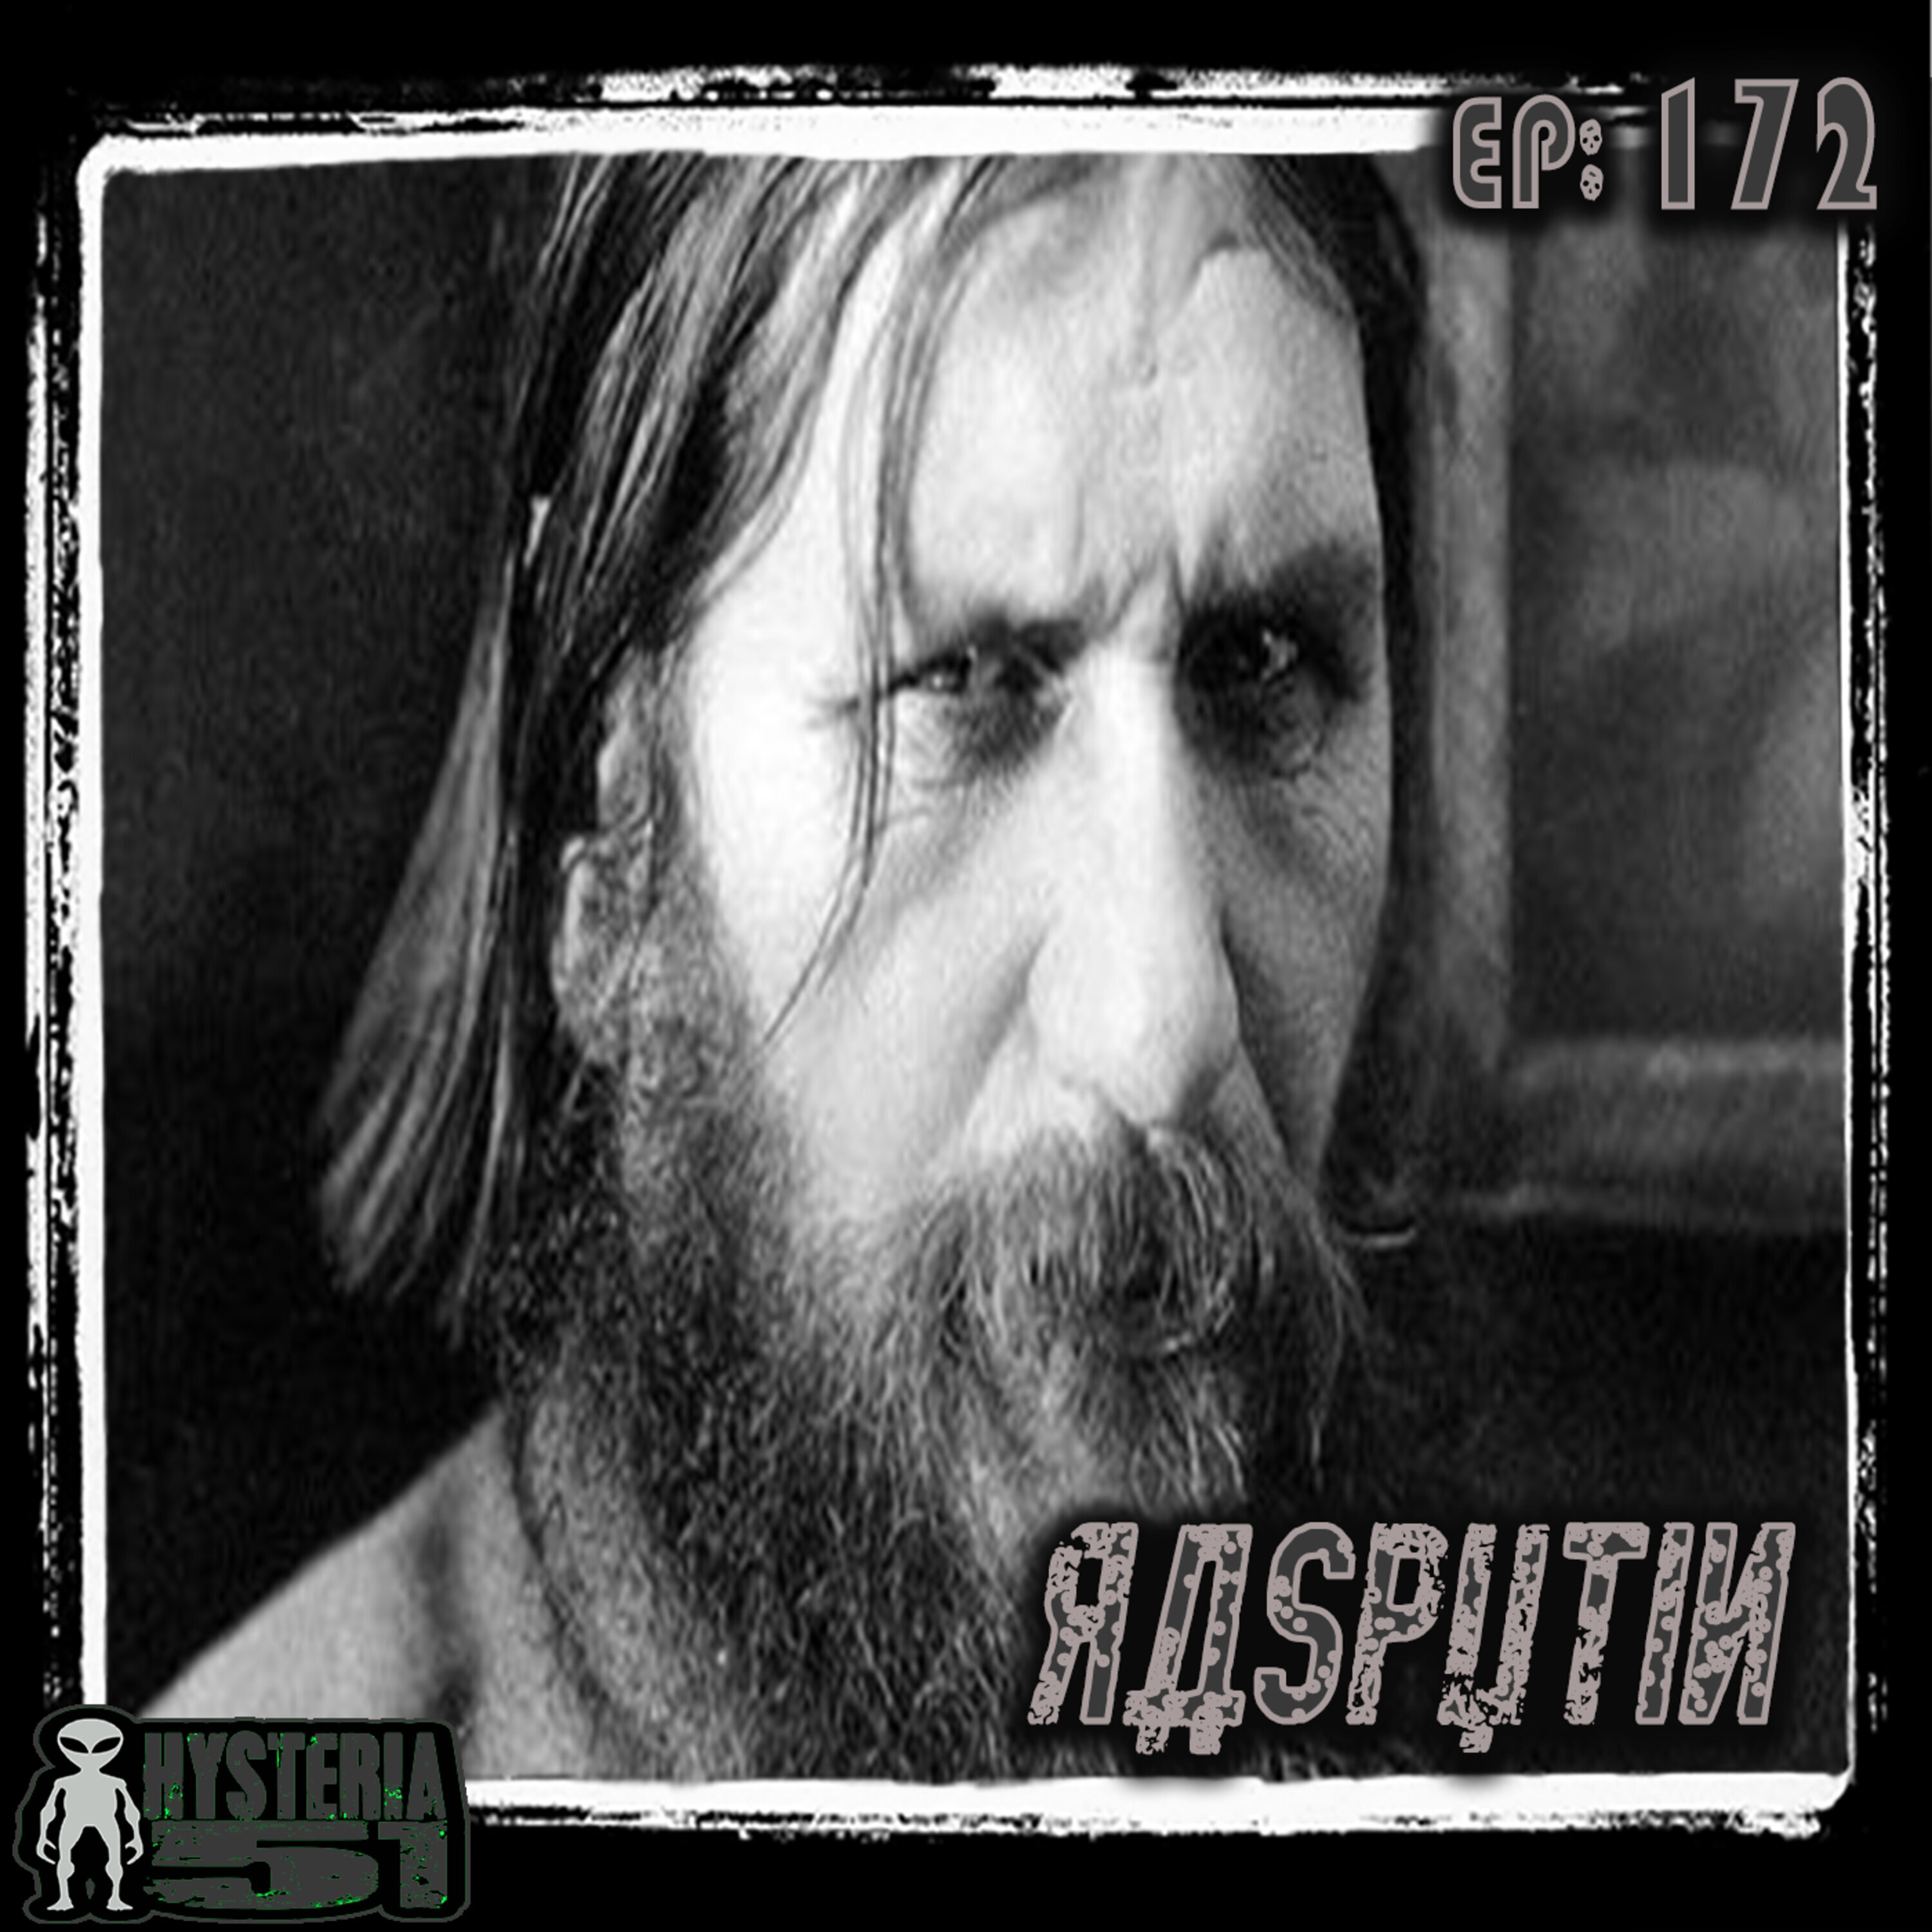 Rasputin: Magical Dark Monk or Malodorous Drunk Mountebank? | 172 Image